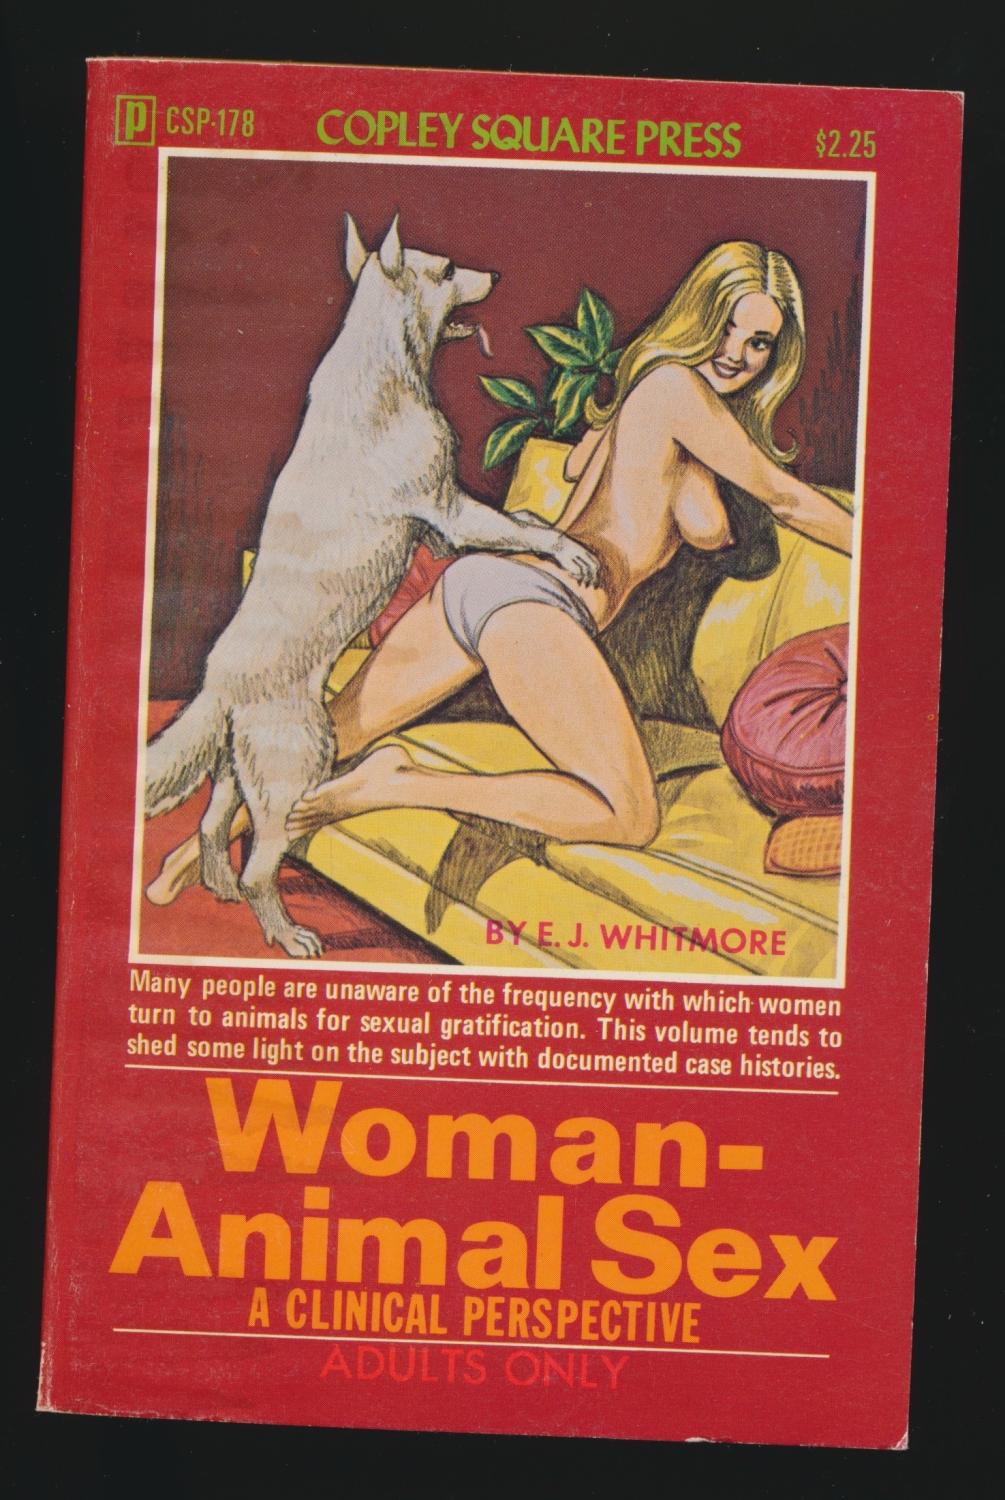 Animal and woman sex